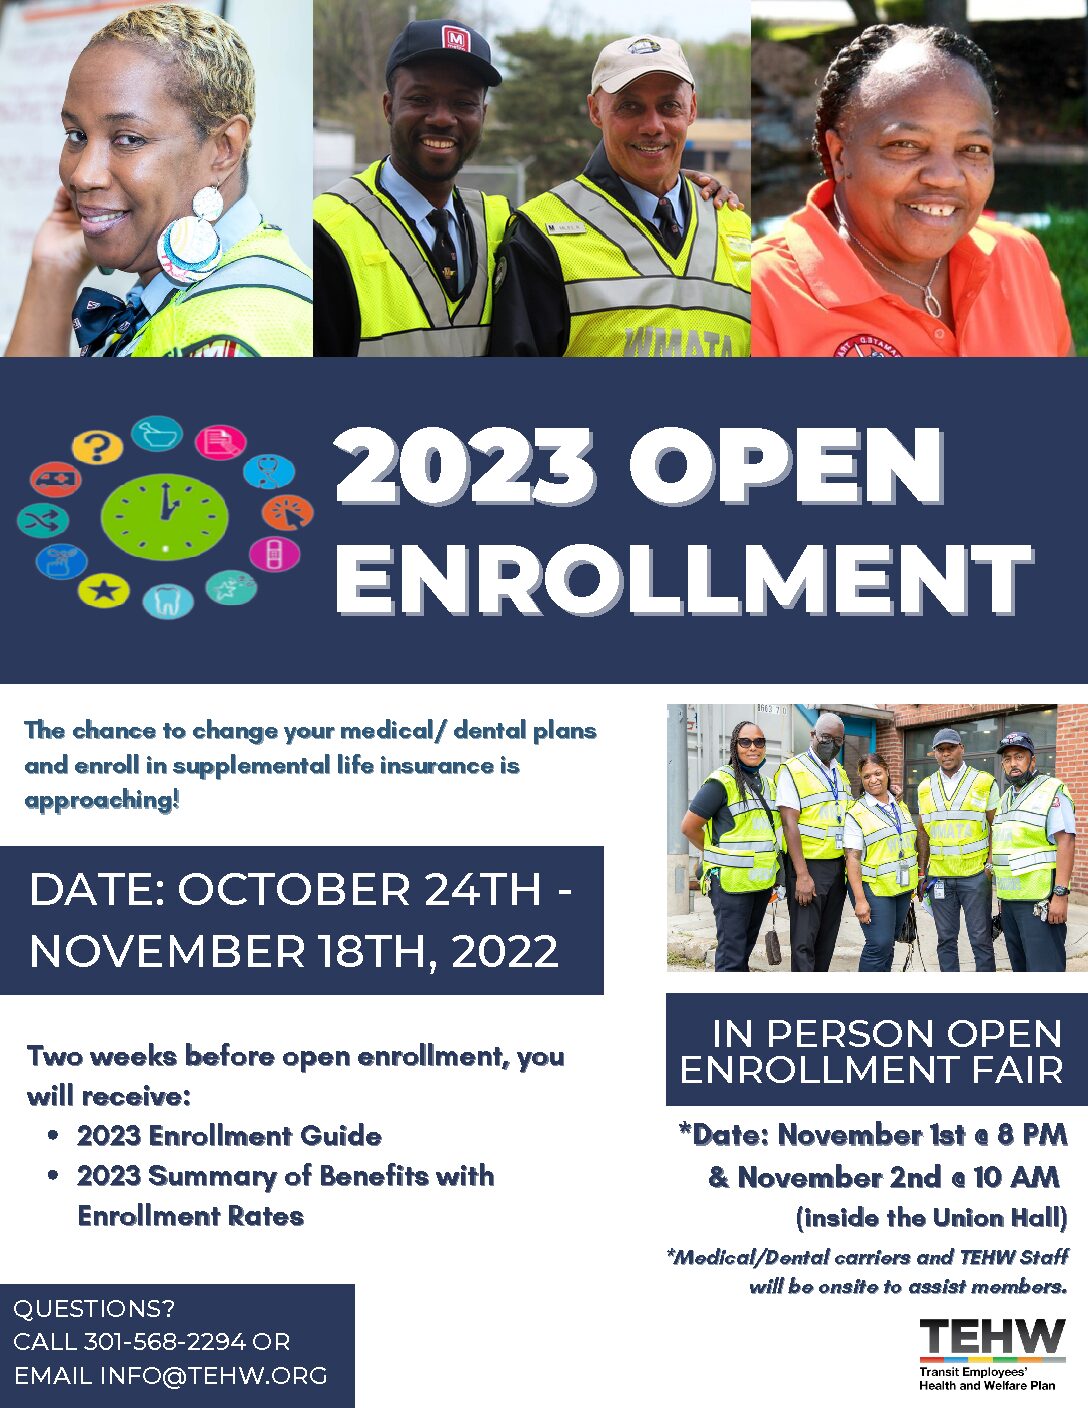 Ambetter Open Enrollment 2023 2023 Calendar